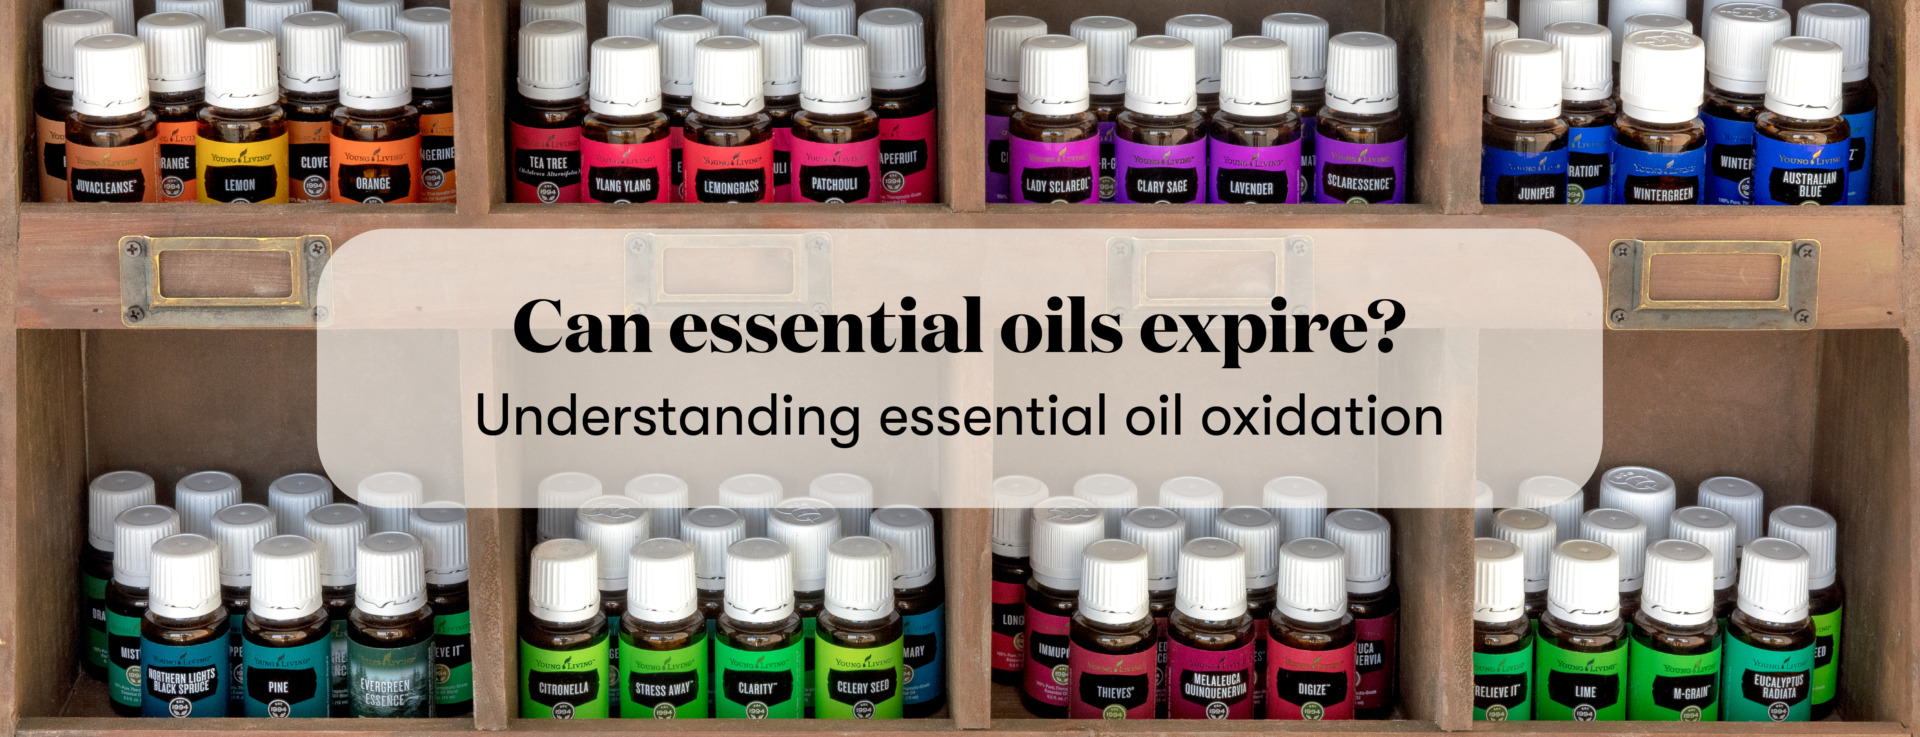 Do Essential Oils Expire? Oxidation & Essential Oils | Young Living Blog